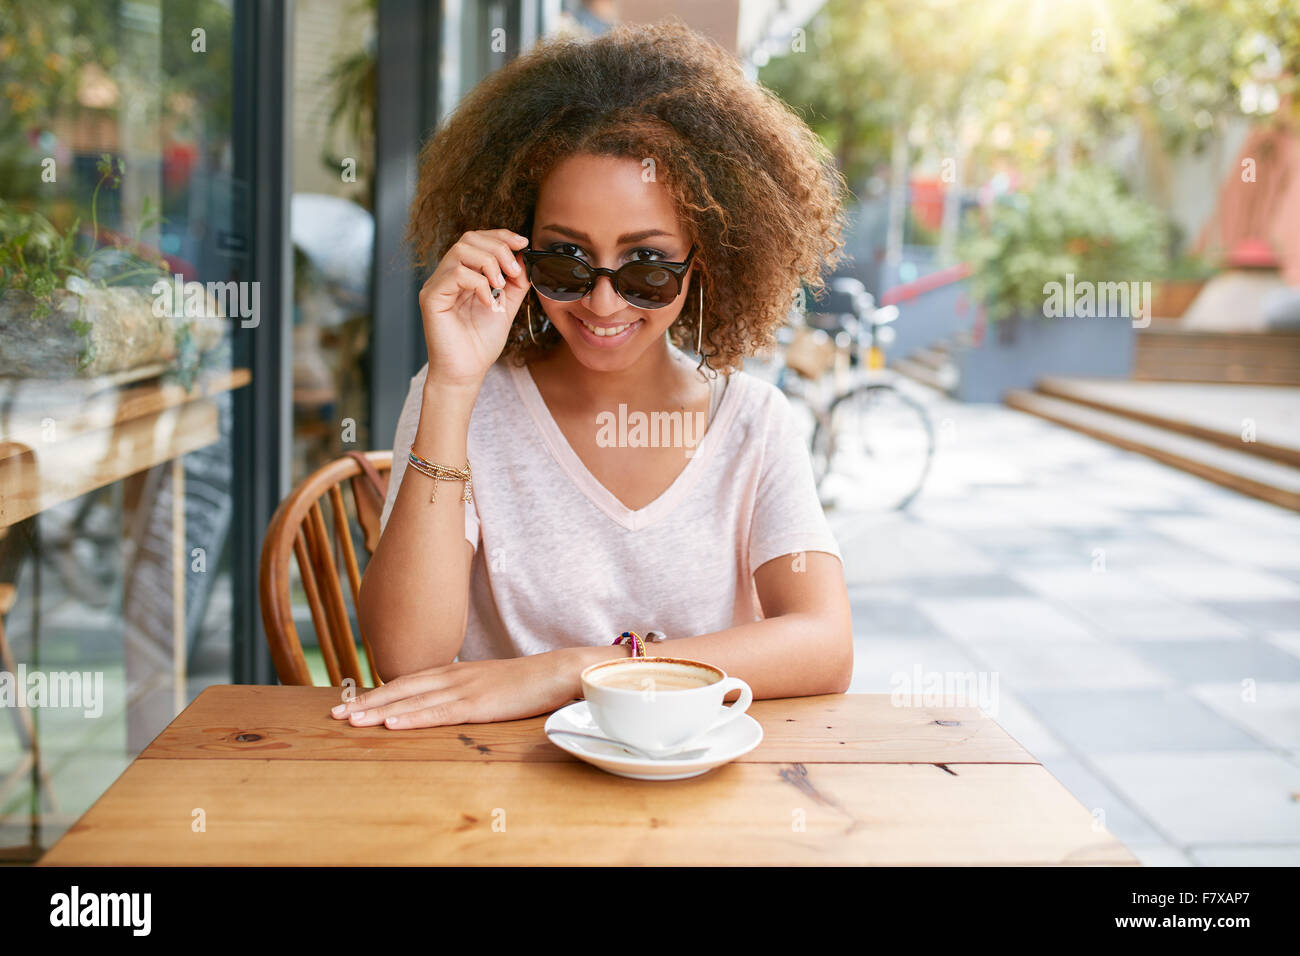 Ritratto di ragazza giovane e carina a outdoor cafe. Giovane donna africana indossando occhiali da sole guardando la fotocamera. Foto Stock